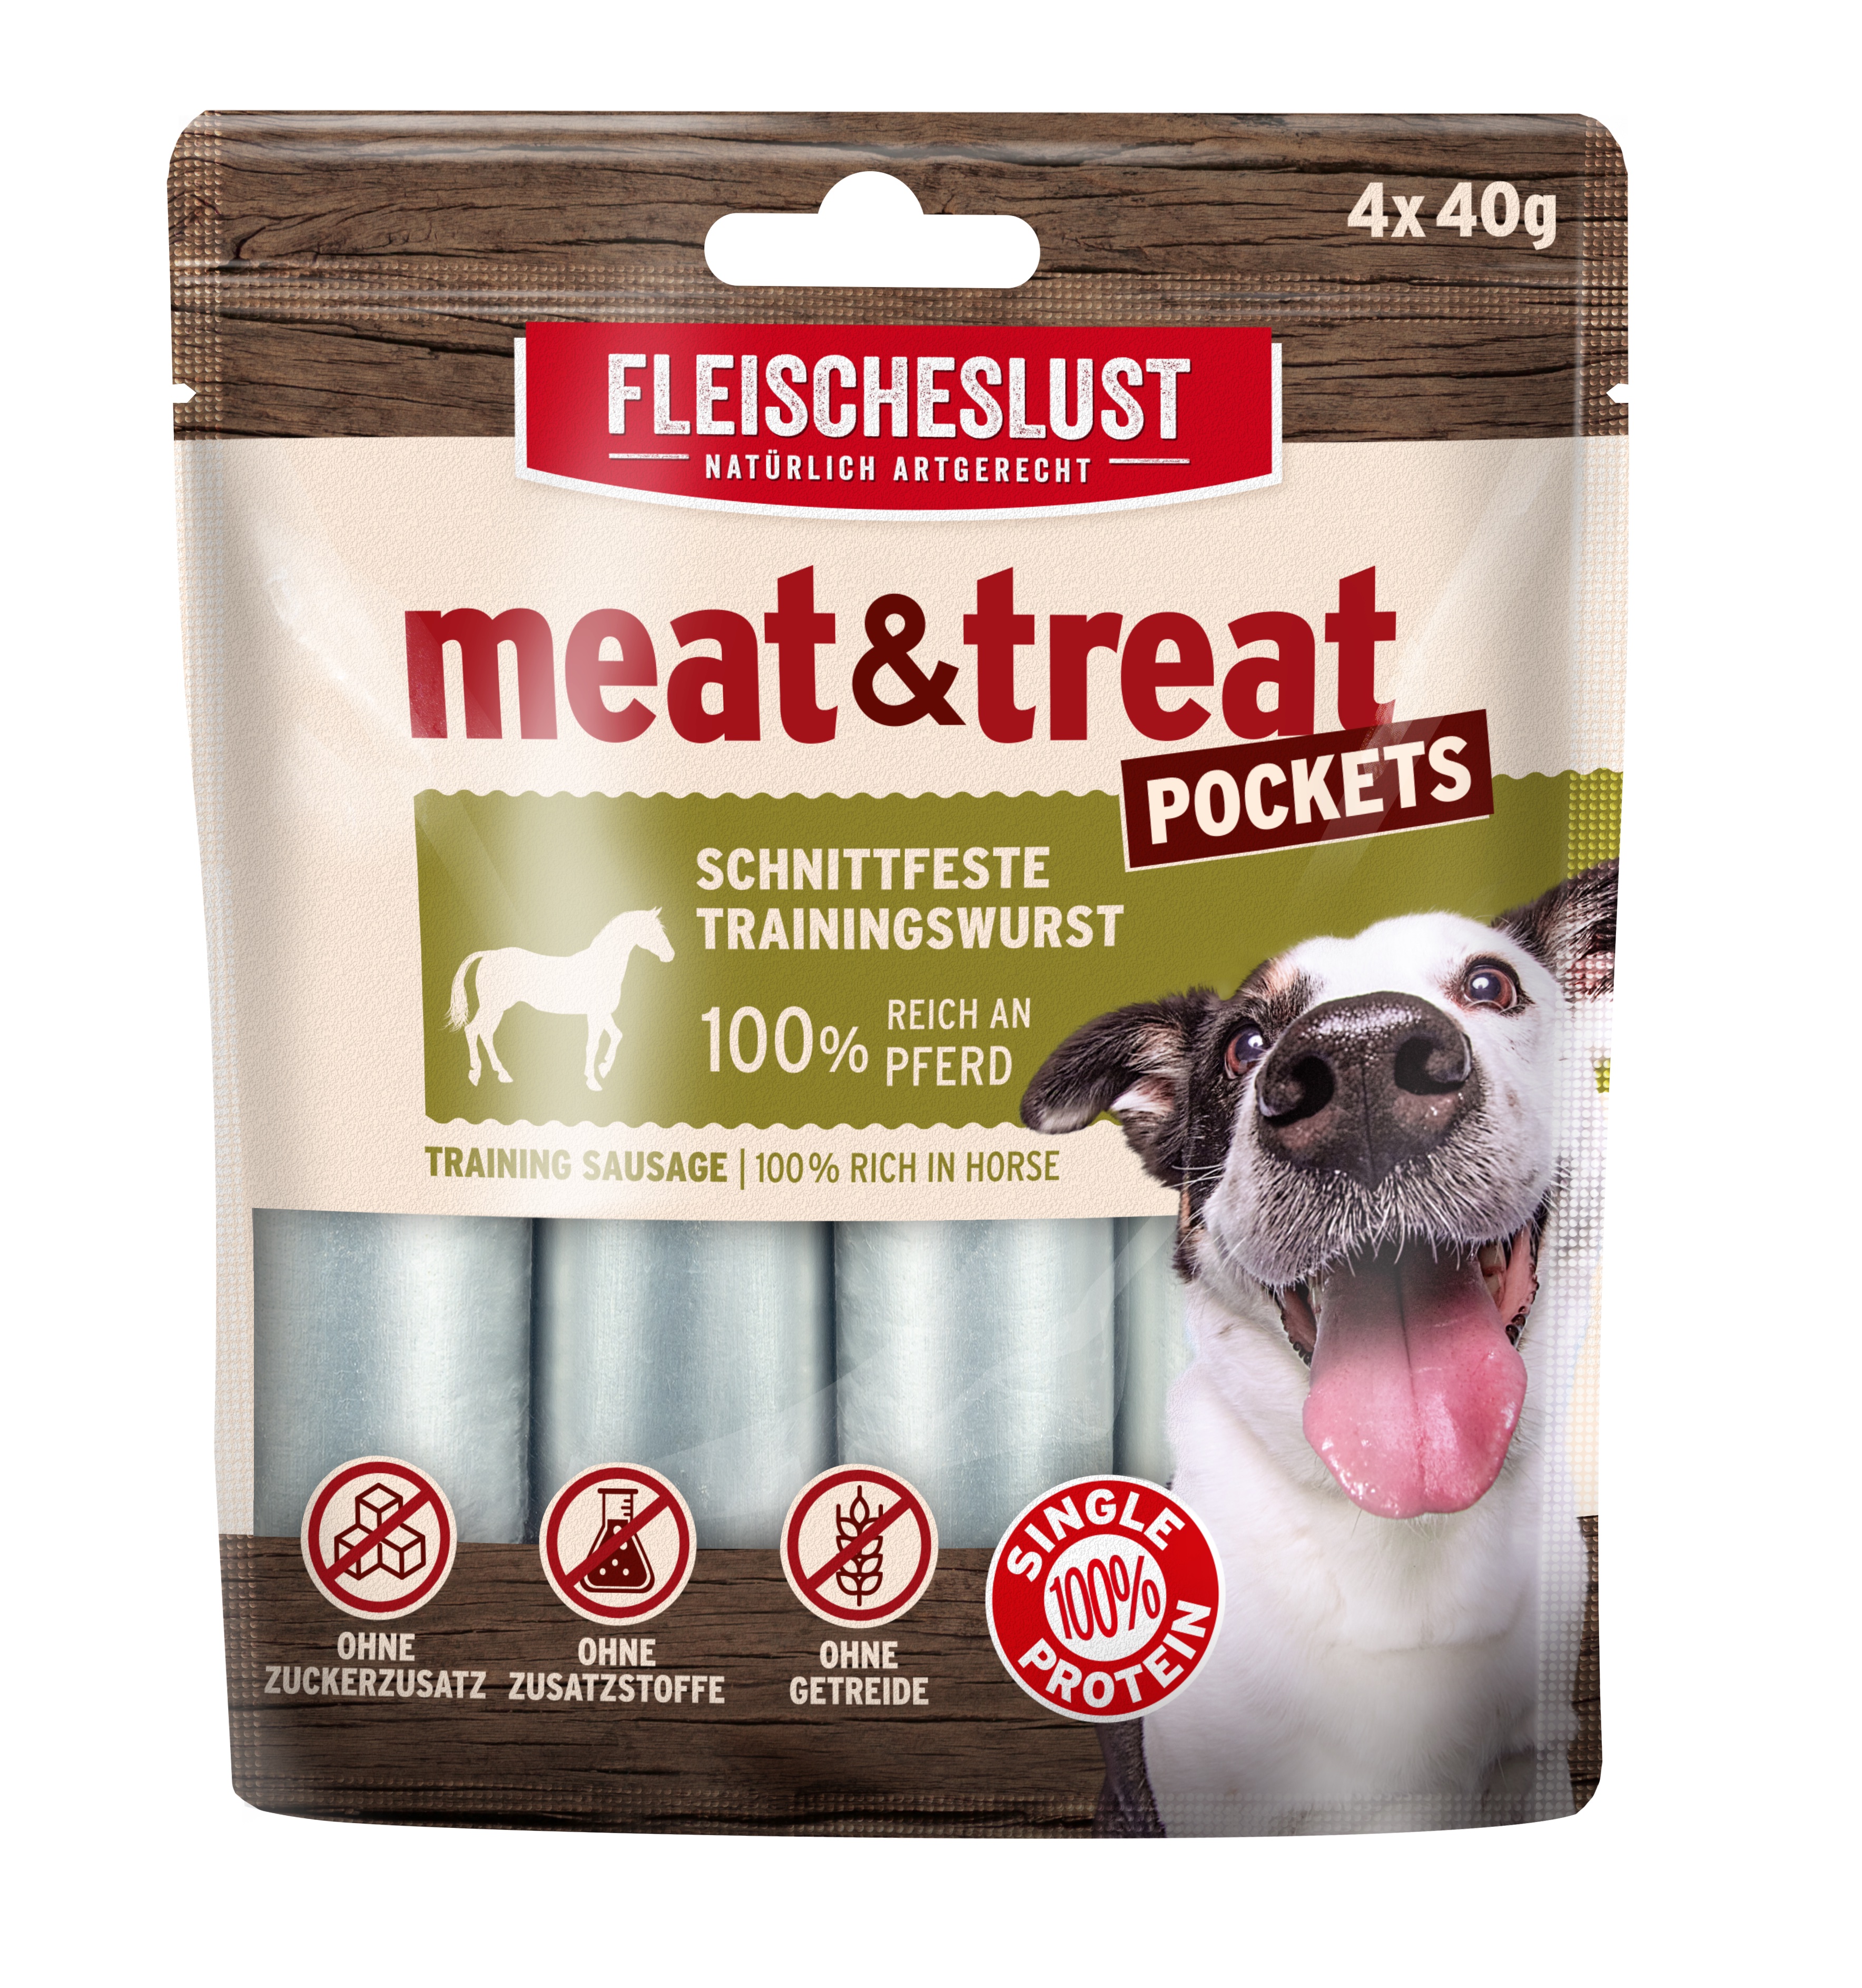 Fleischeslust Meat & Treat Pockets 4x40g